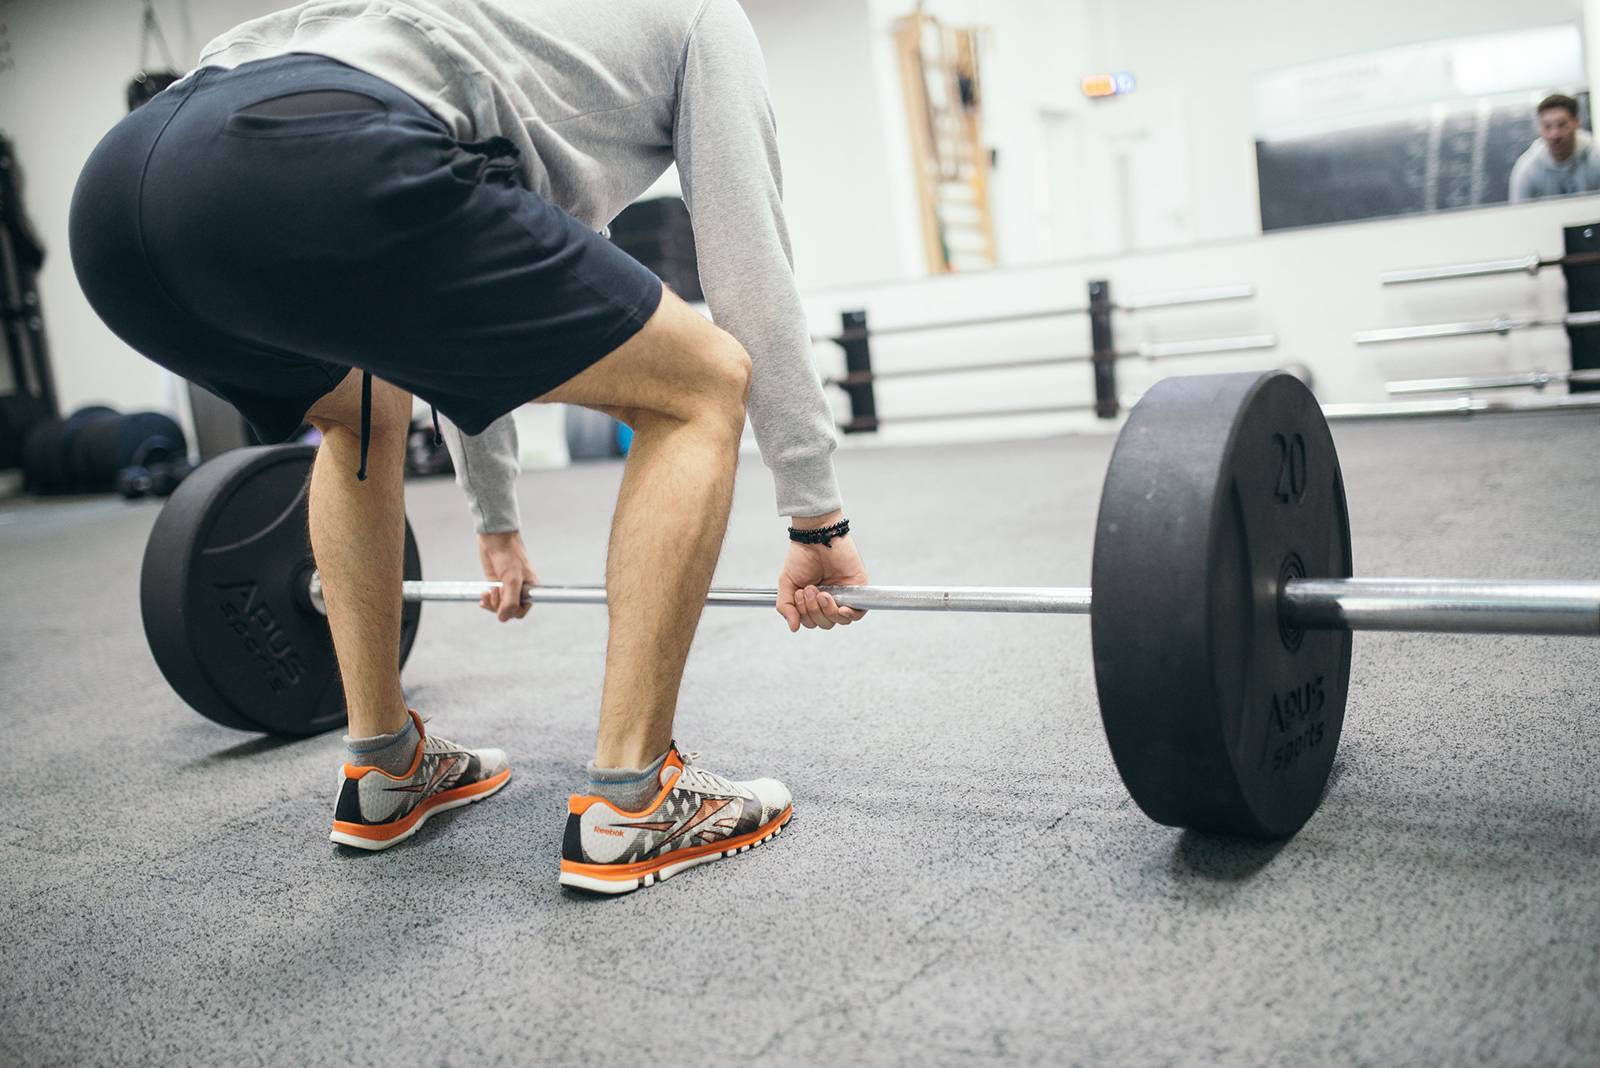 Становая тяга — какие мышцы качает, что дает и когда лучше делать?